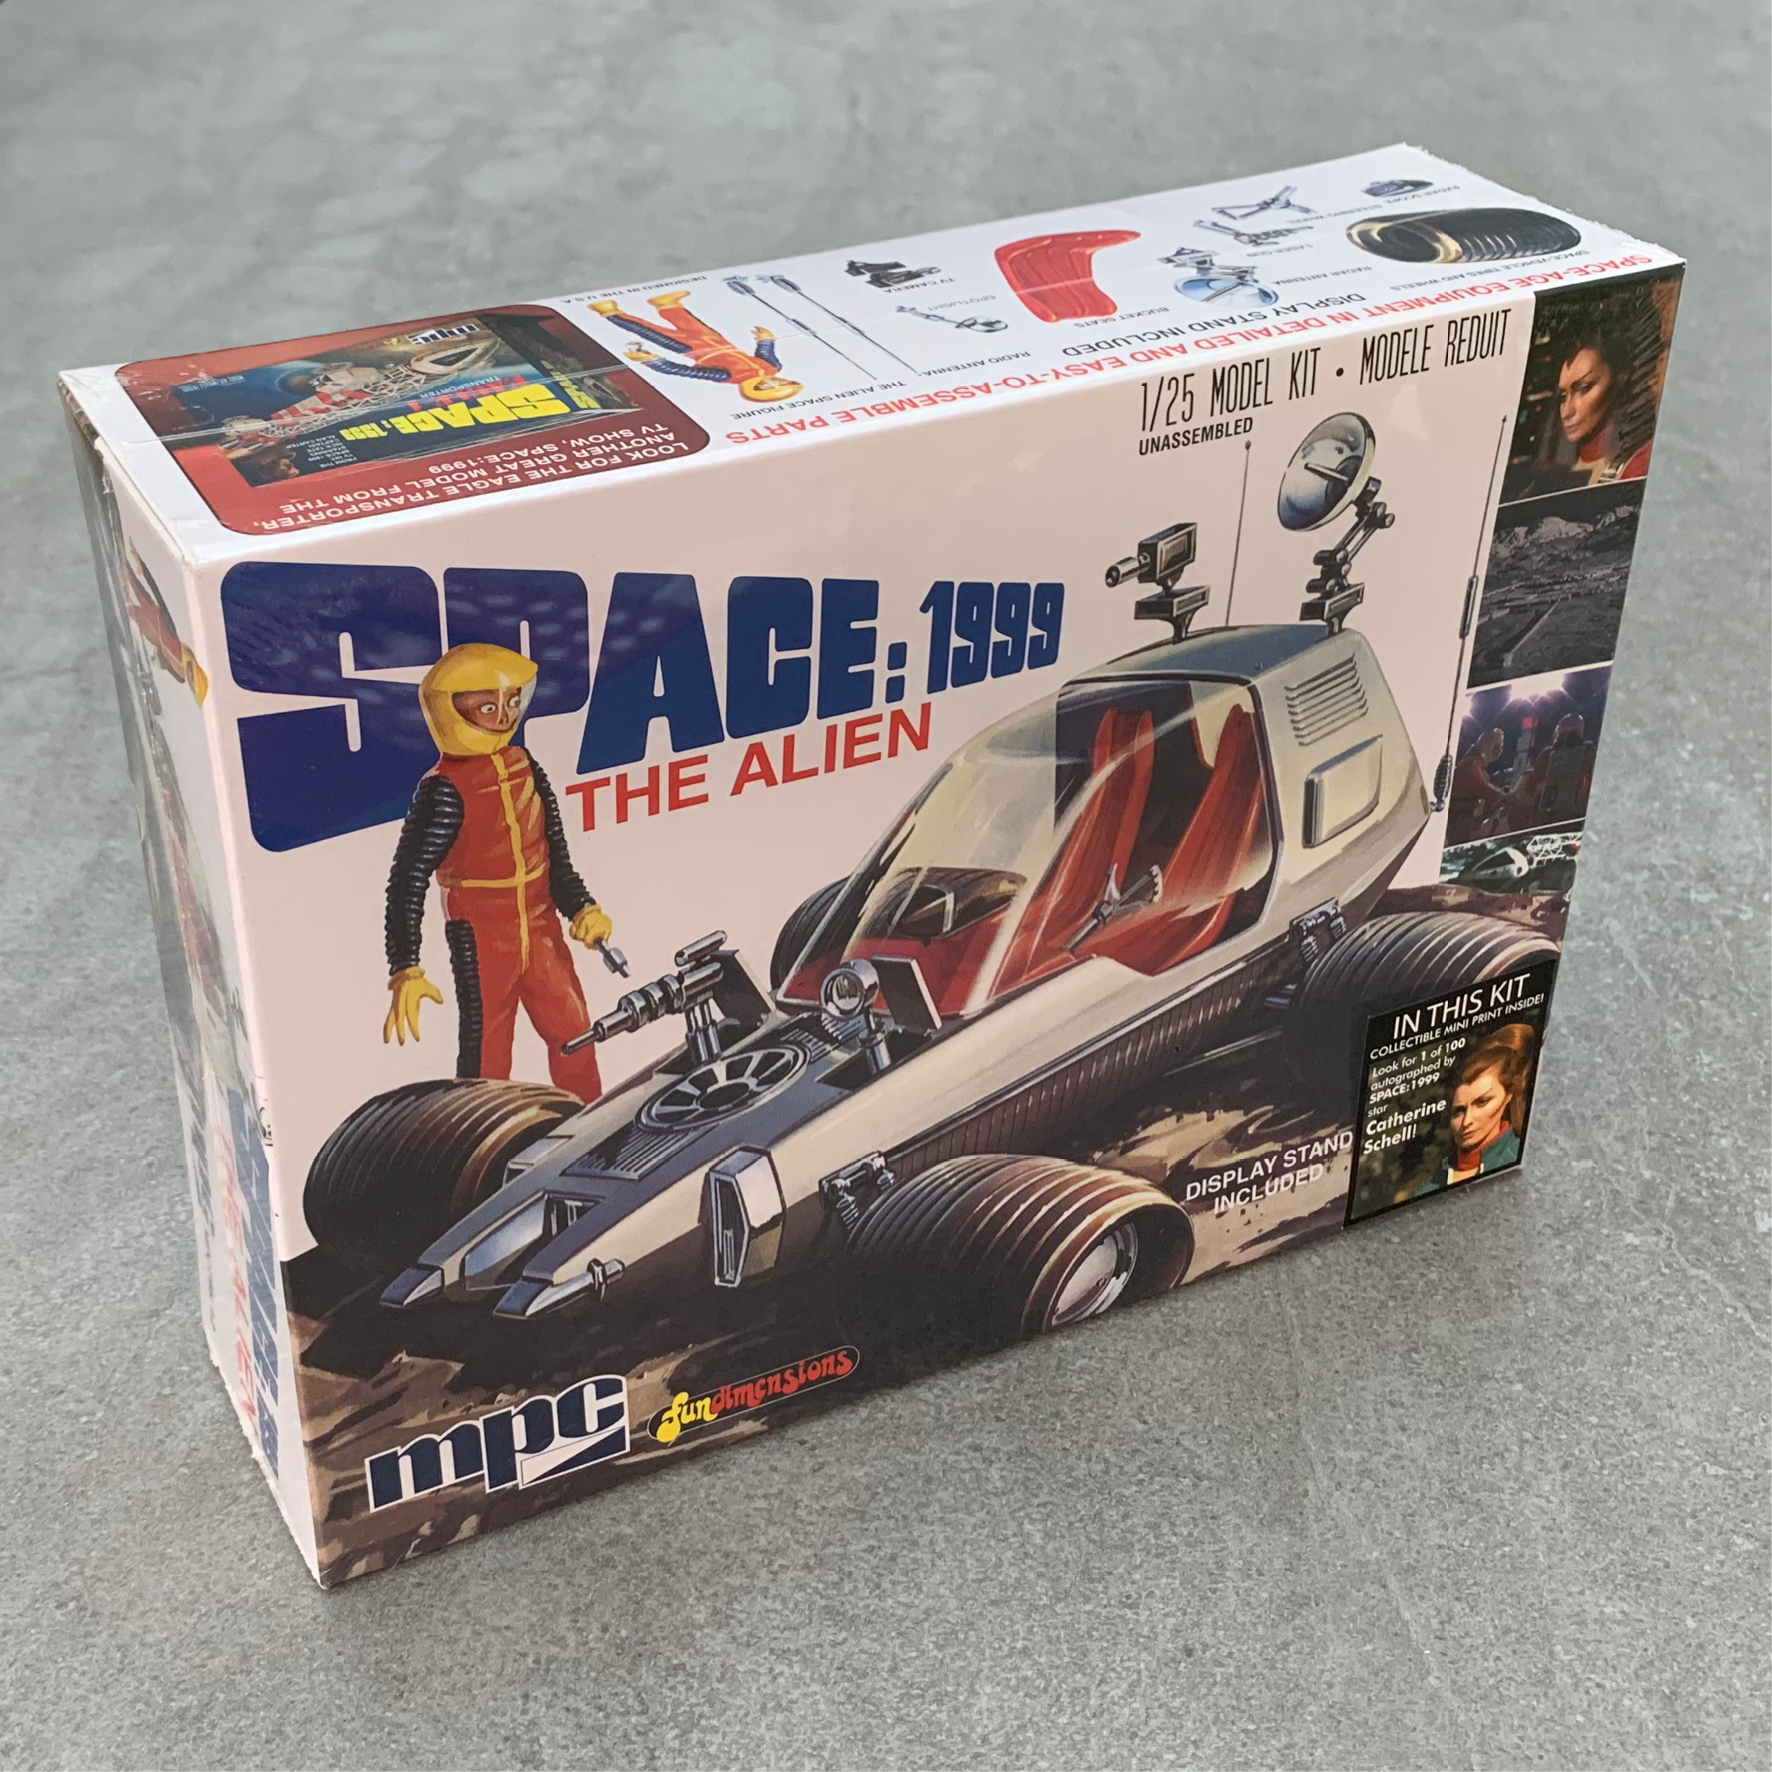 Framed print of Thunderbirds 2 and 3 artwork for Imai’s model kit